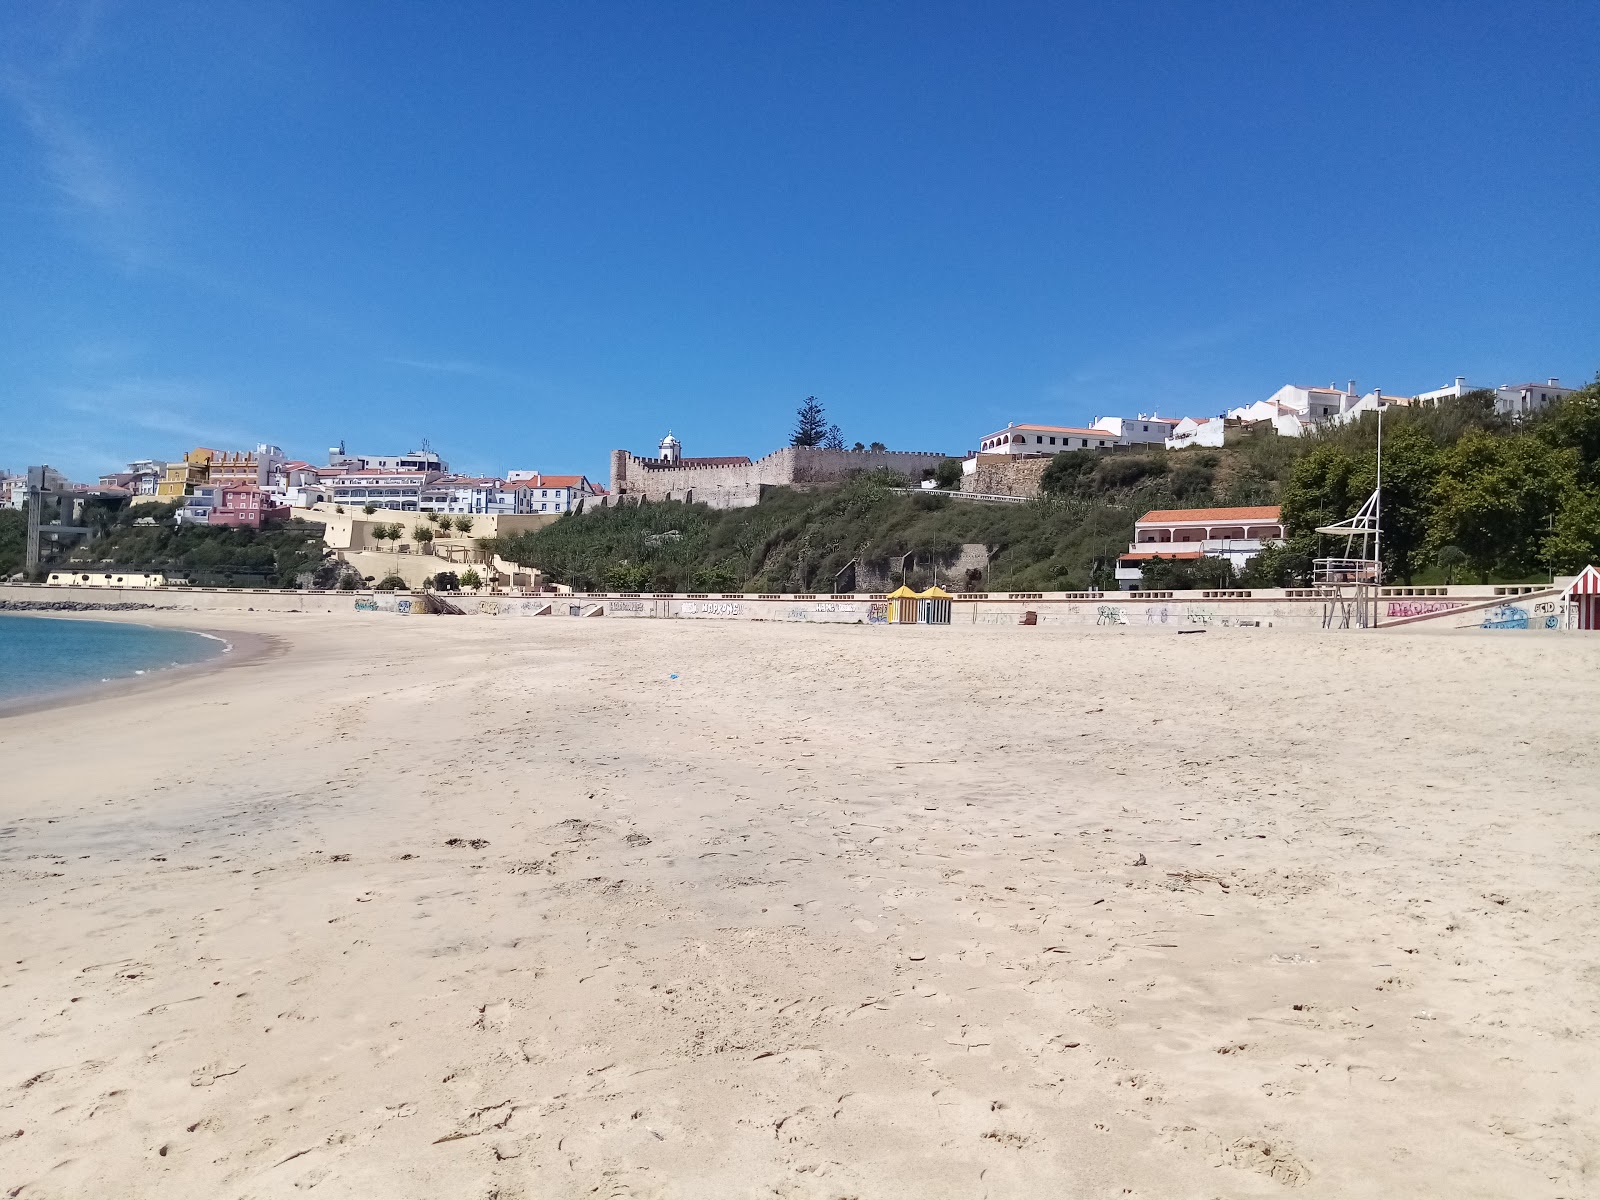 Zdjęcie Praia Vasco da Gama - popularne miejsce wśród znawców relaksu